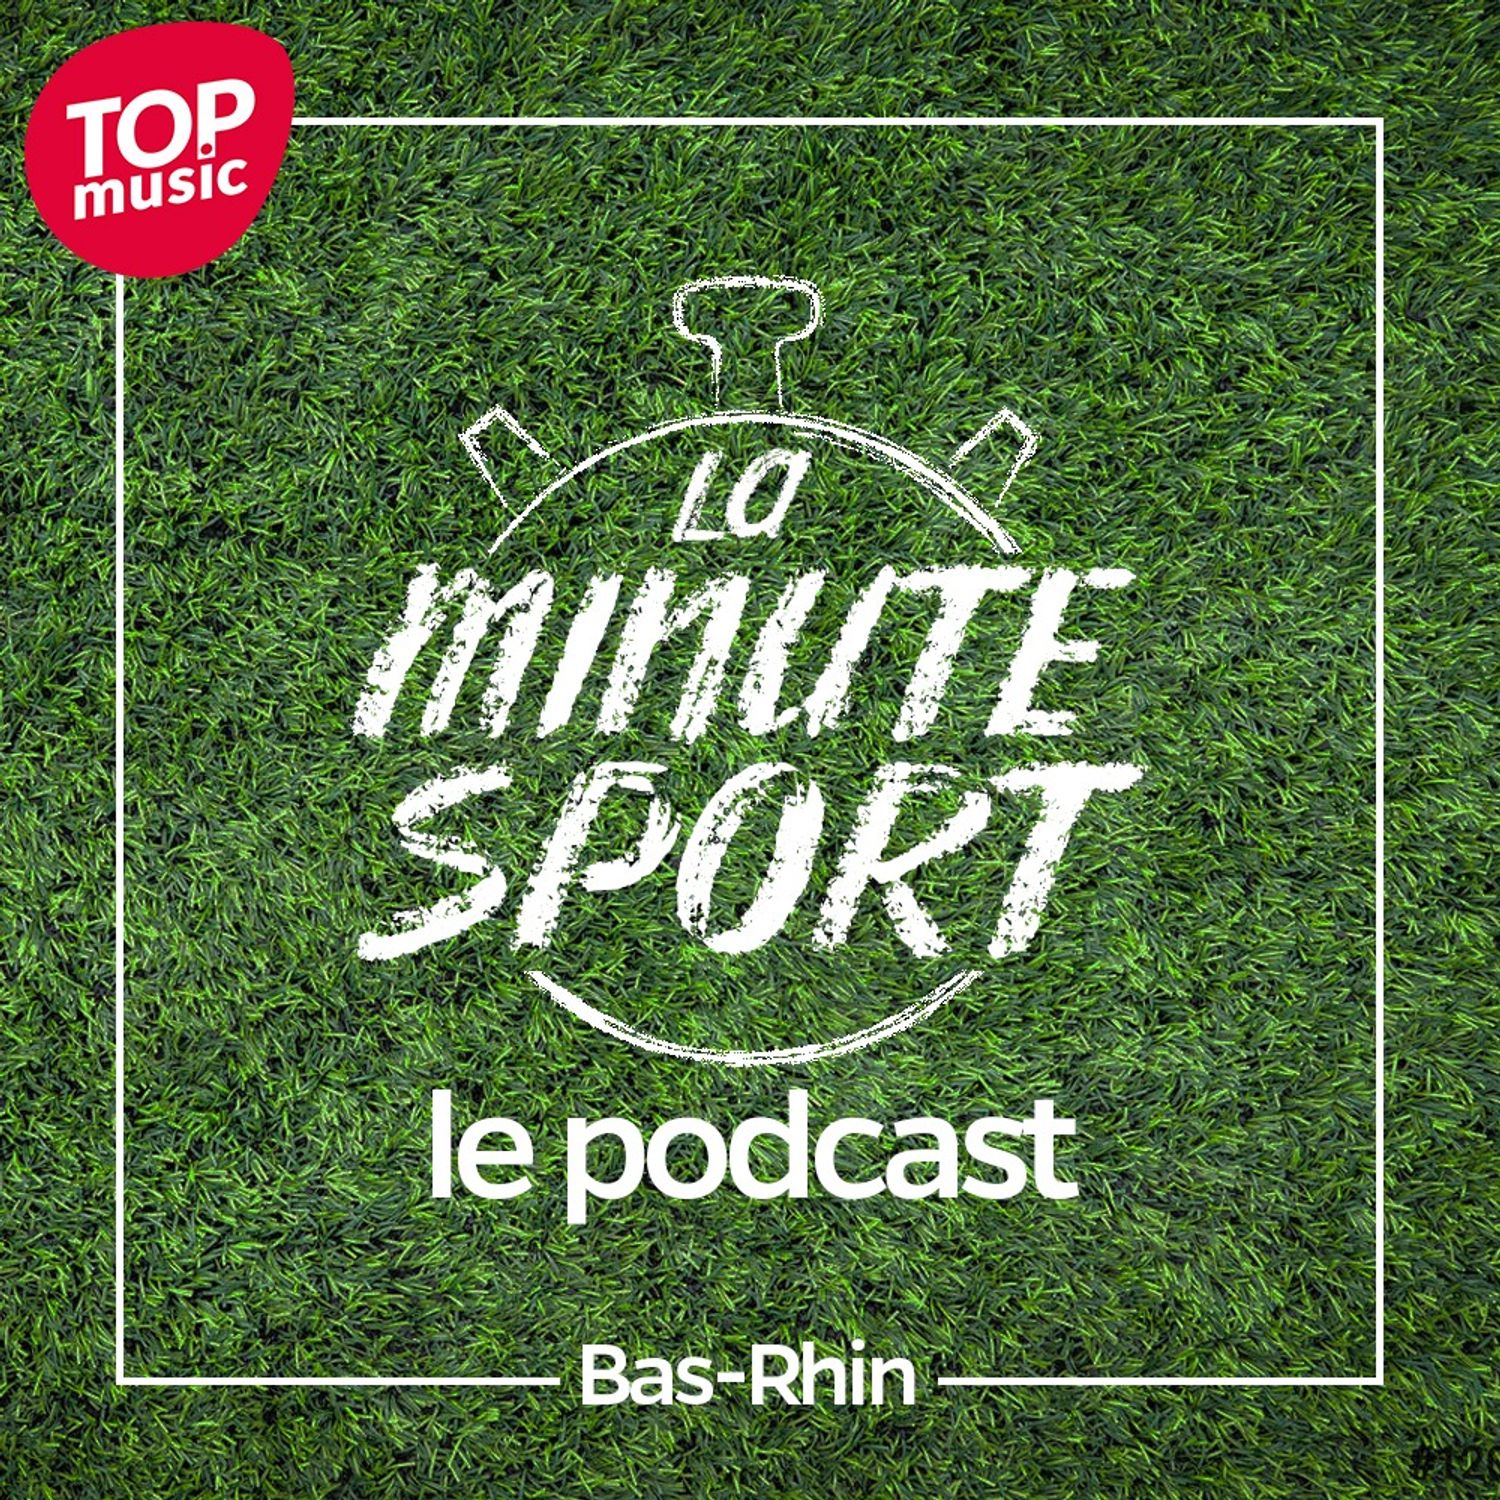 La Minute Sport - Bas-Rhin